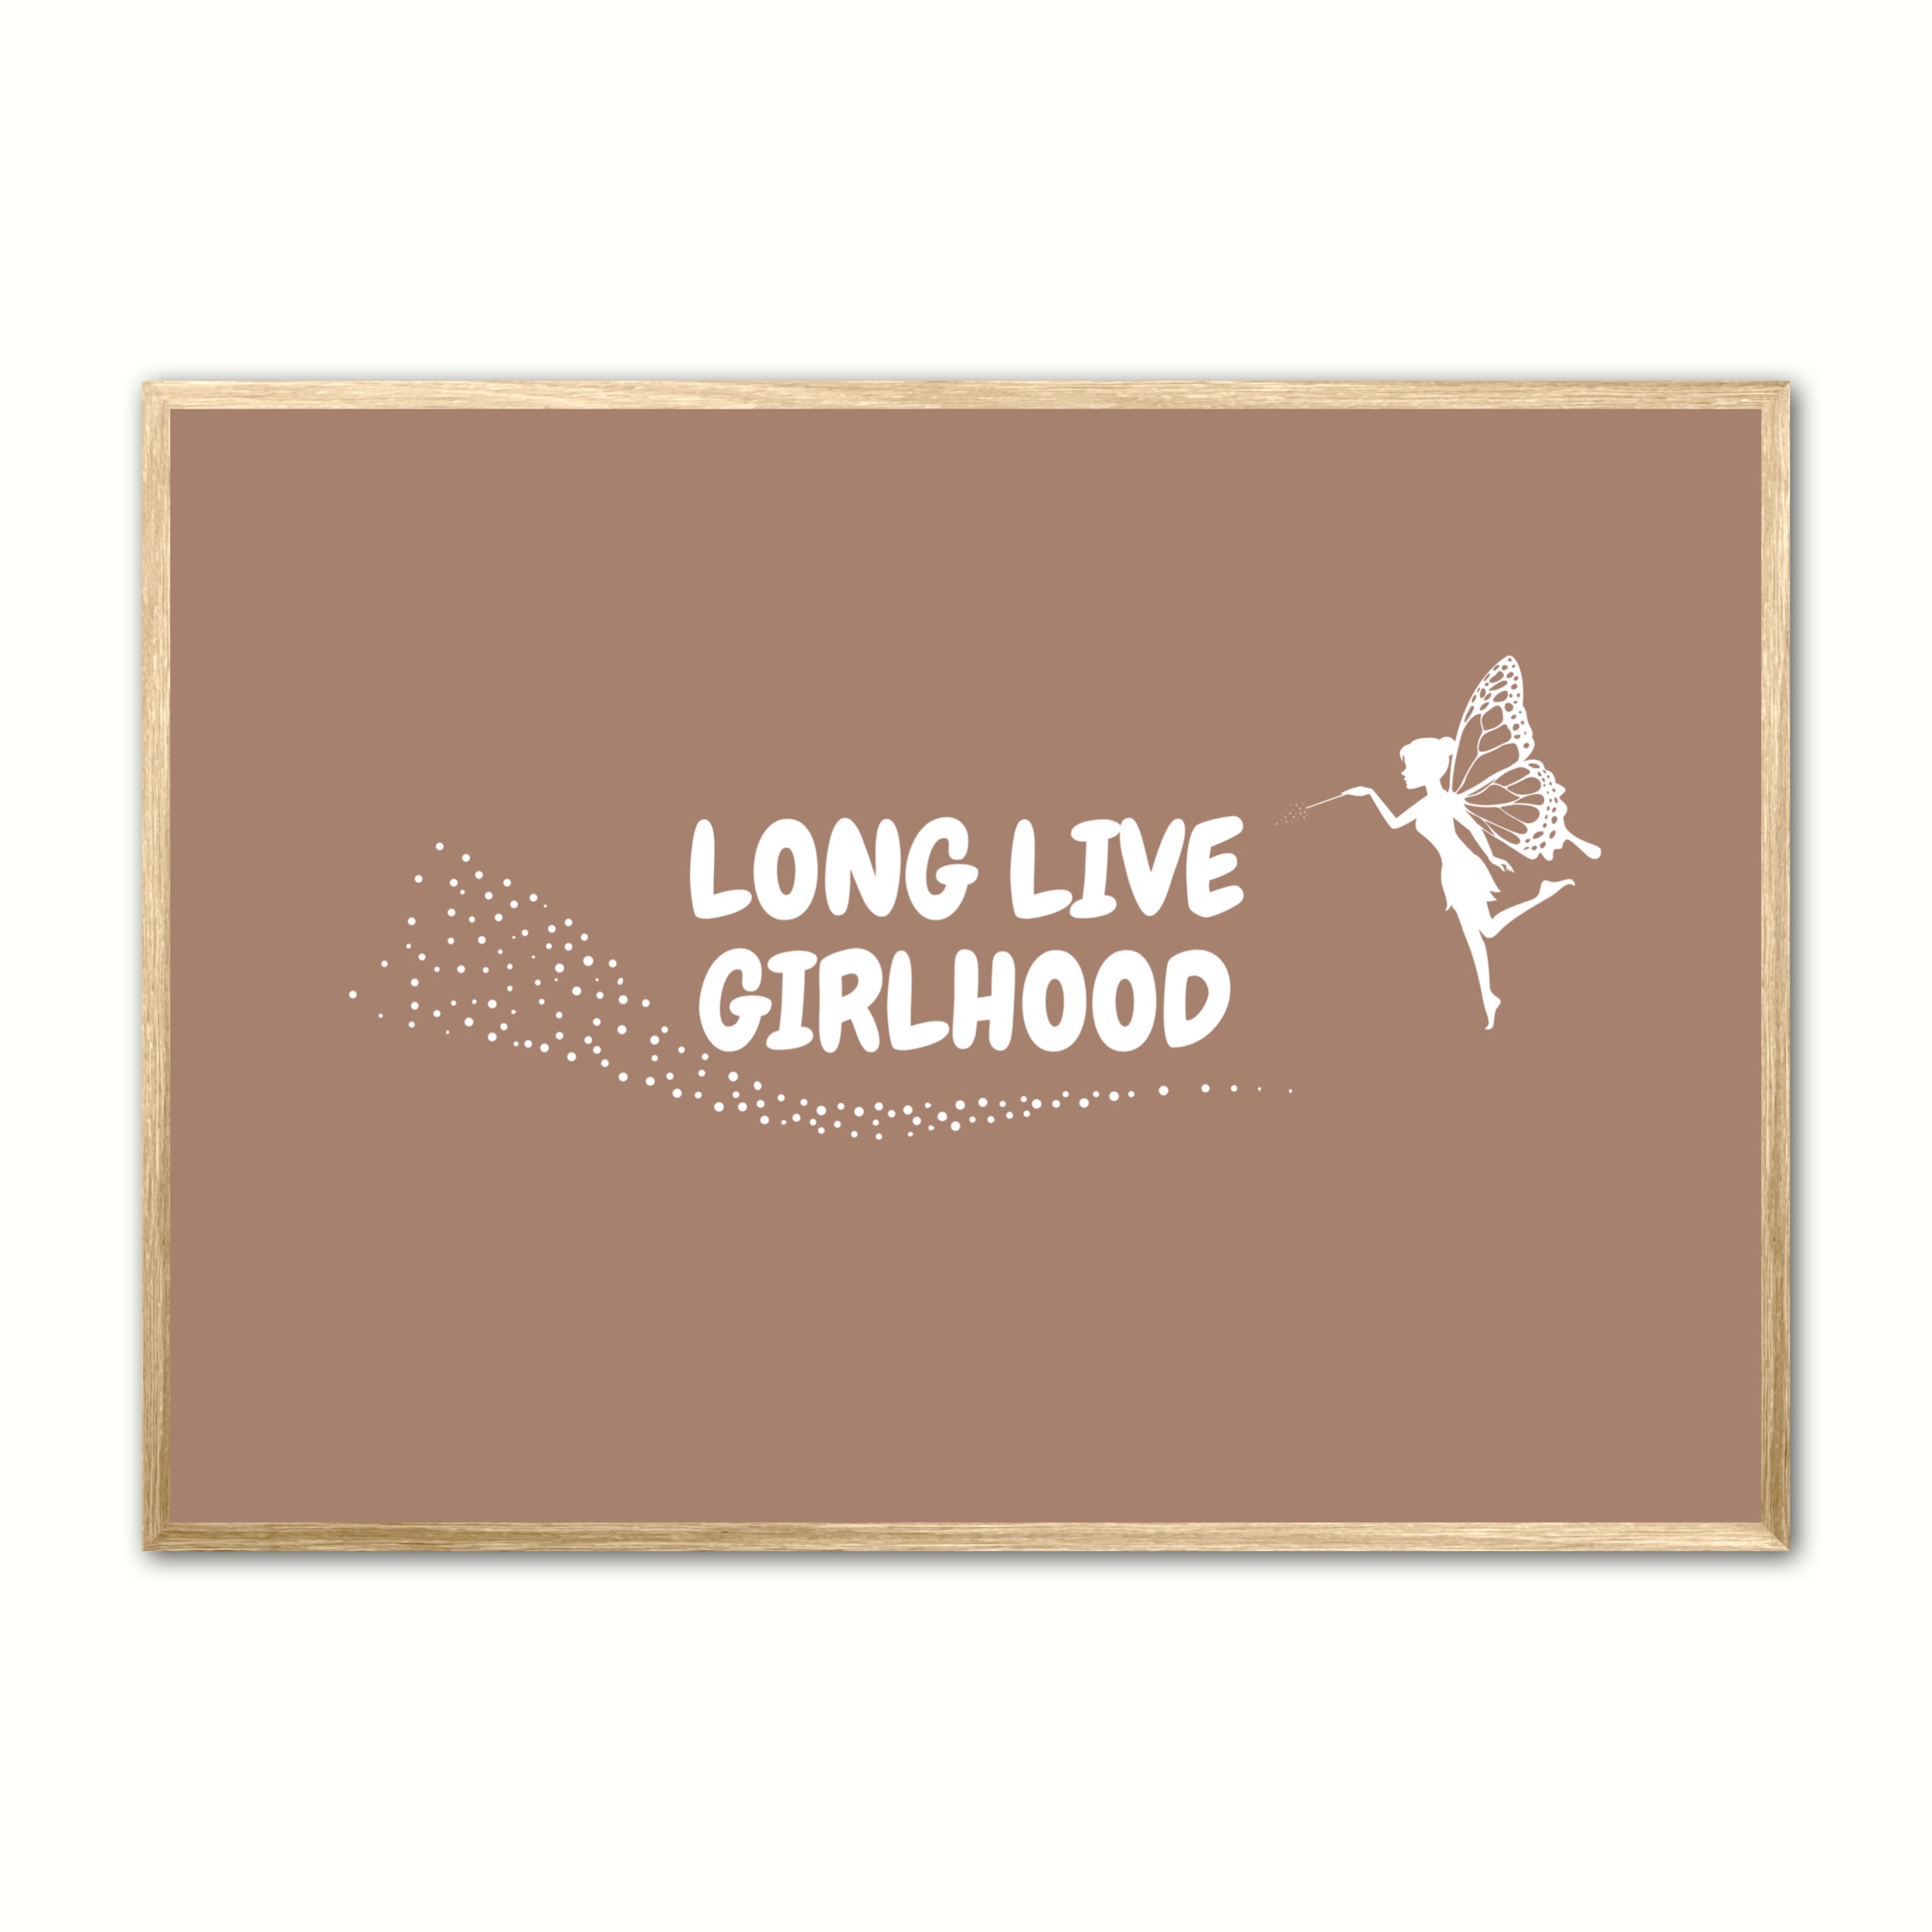 Se Long Live Girlhood plakat - Lys brun 50 x 70 cm (B2) hos Nyplakat.dk